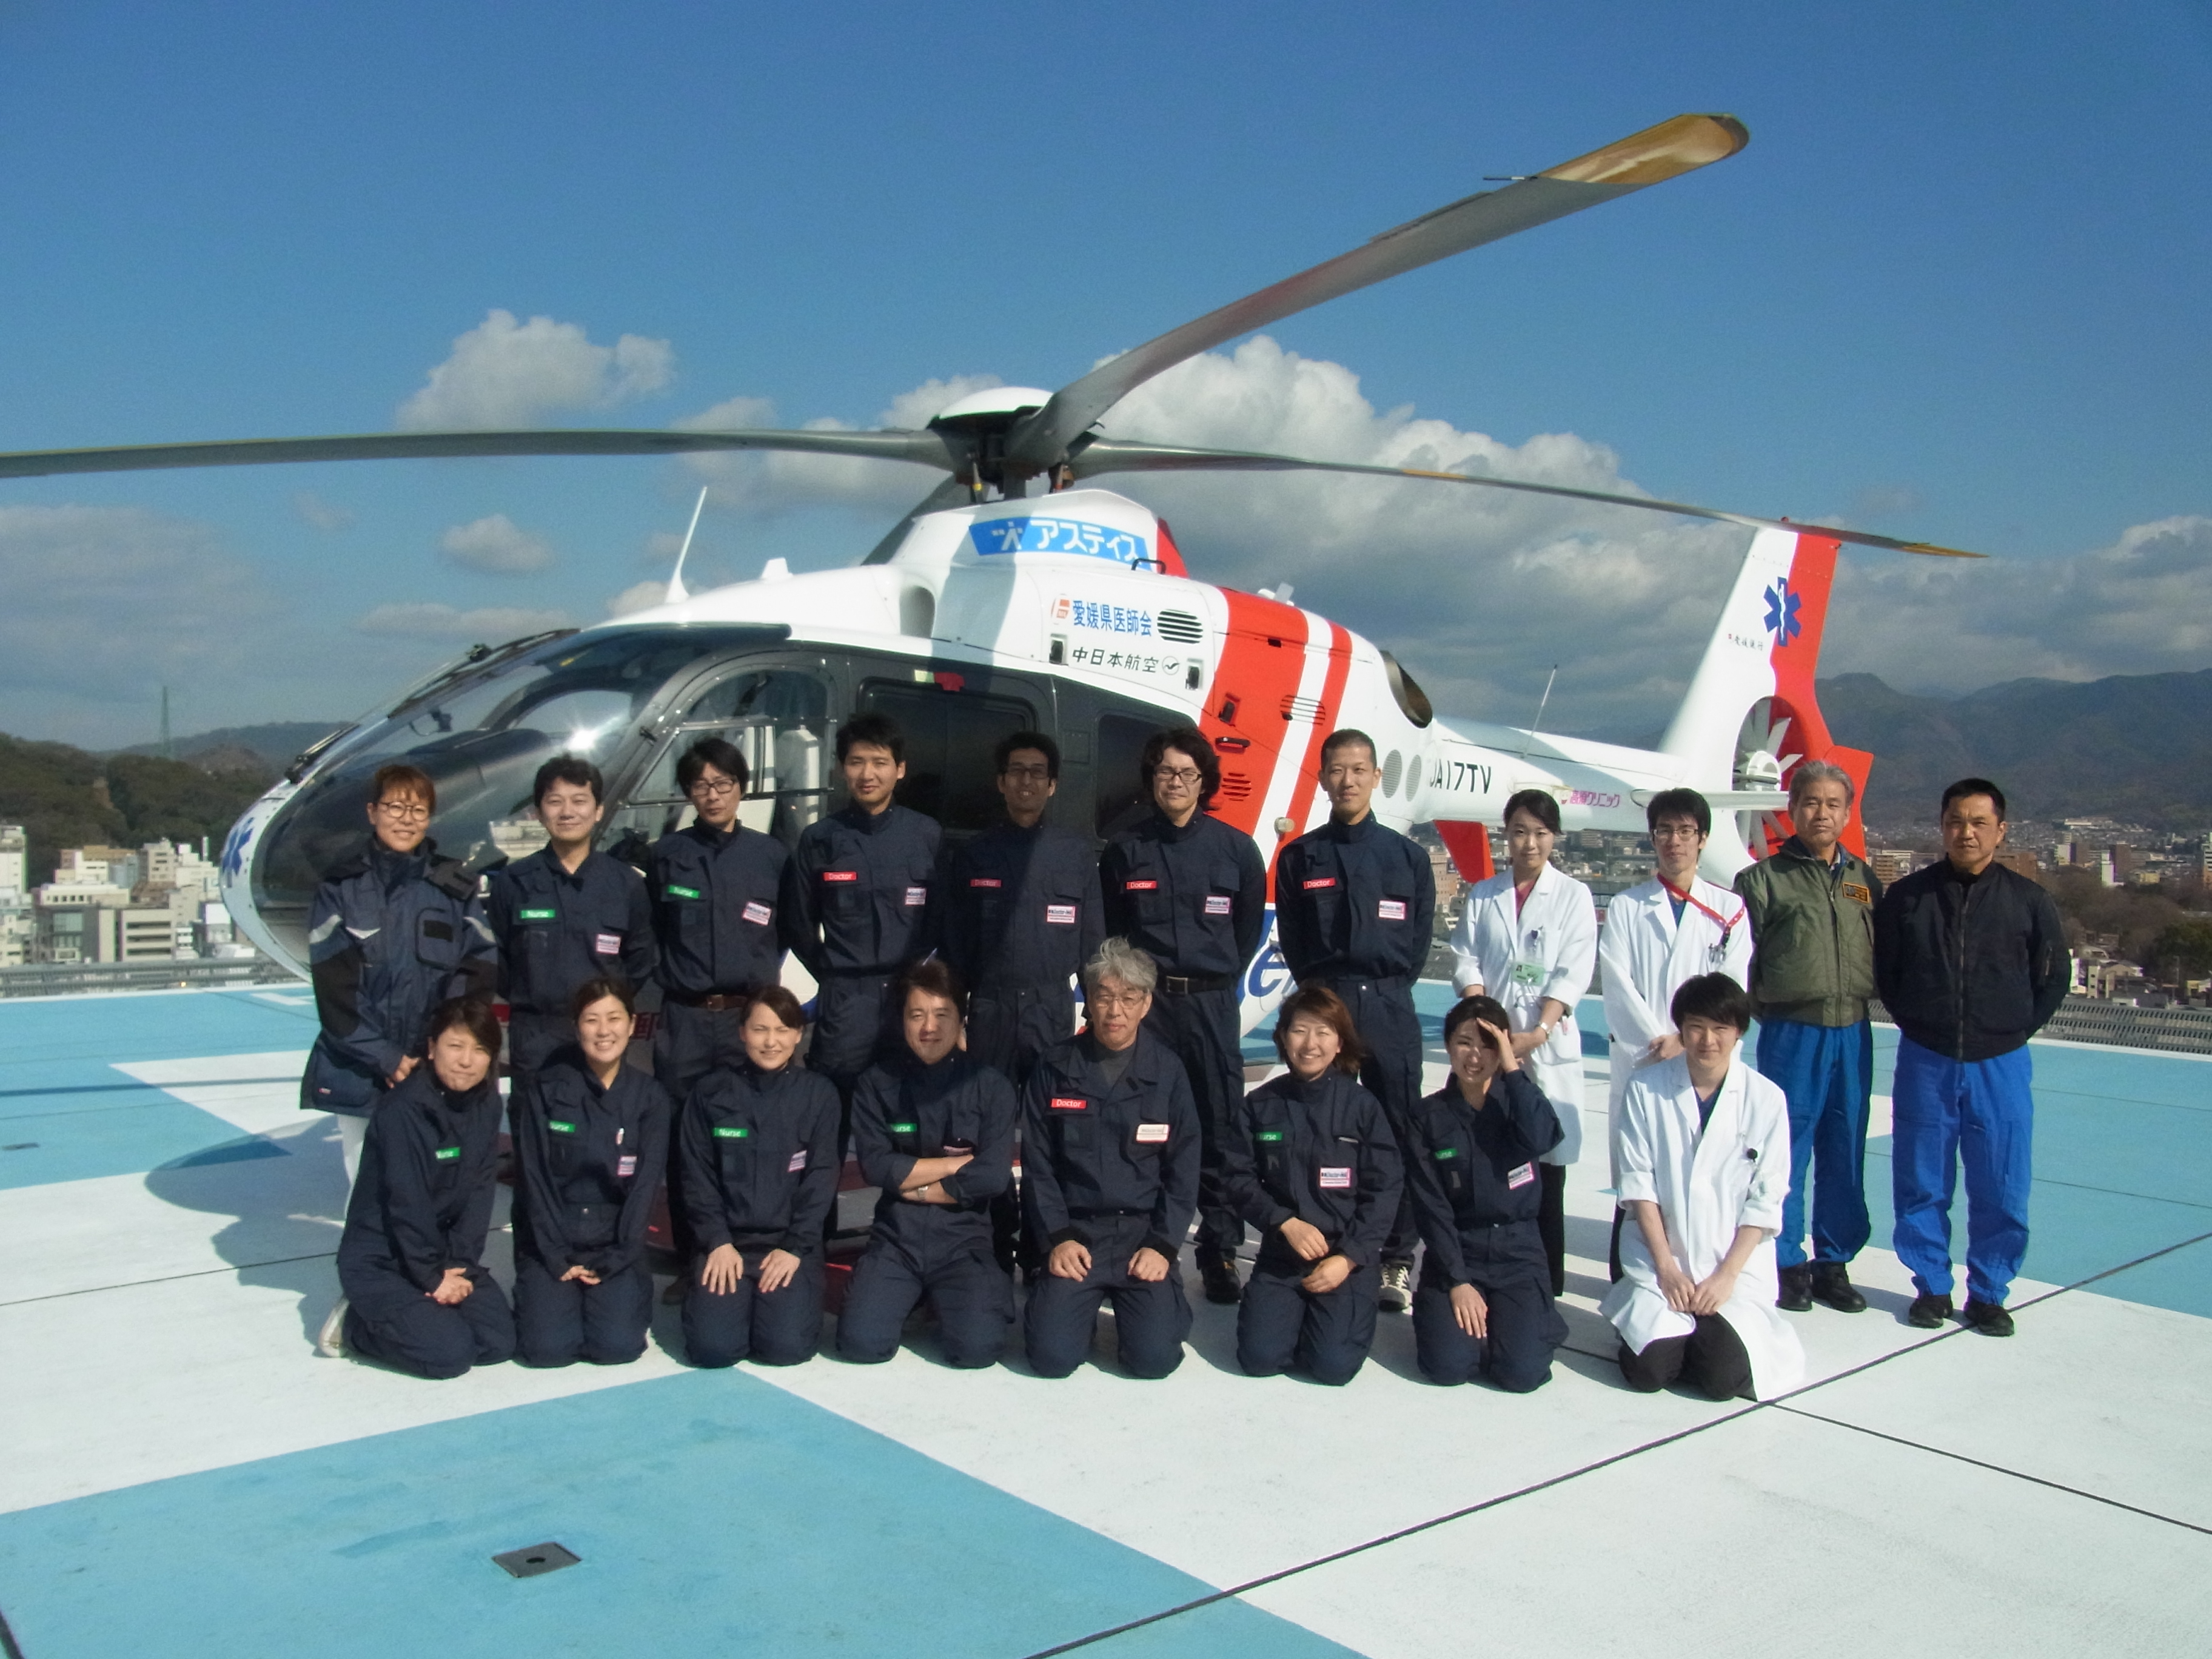 愛媛県ドクターヘリ事業が開始されました 愛媛大学医学部附属病院 救急科